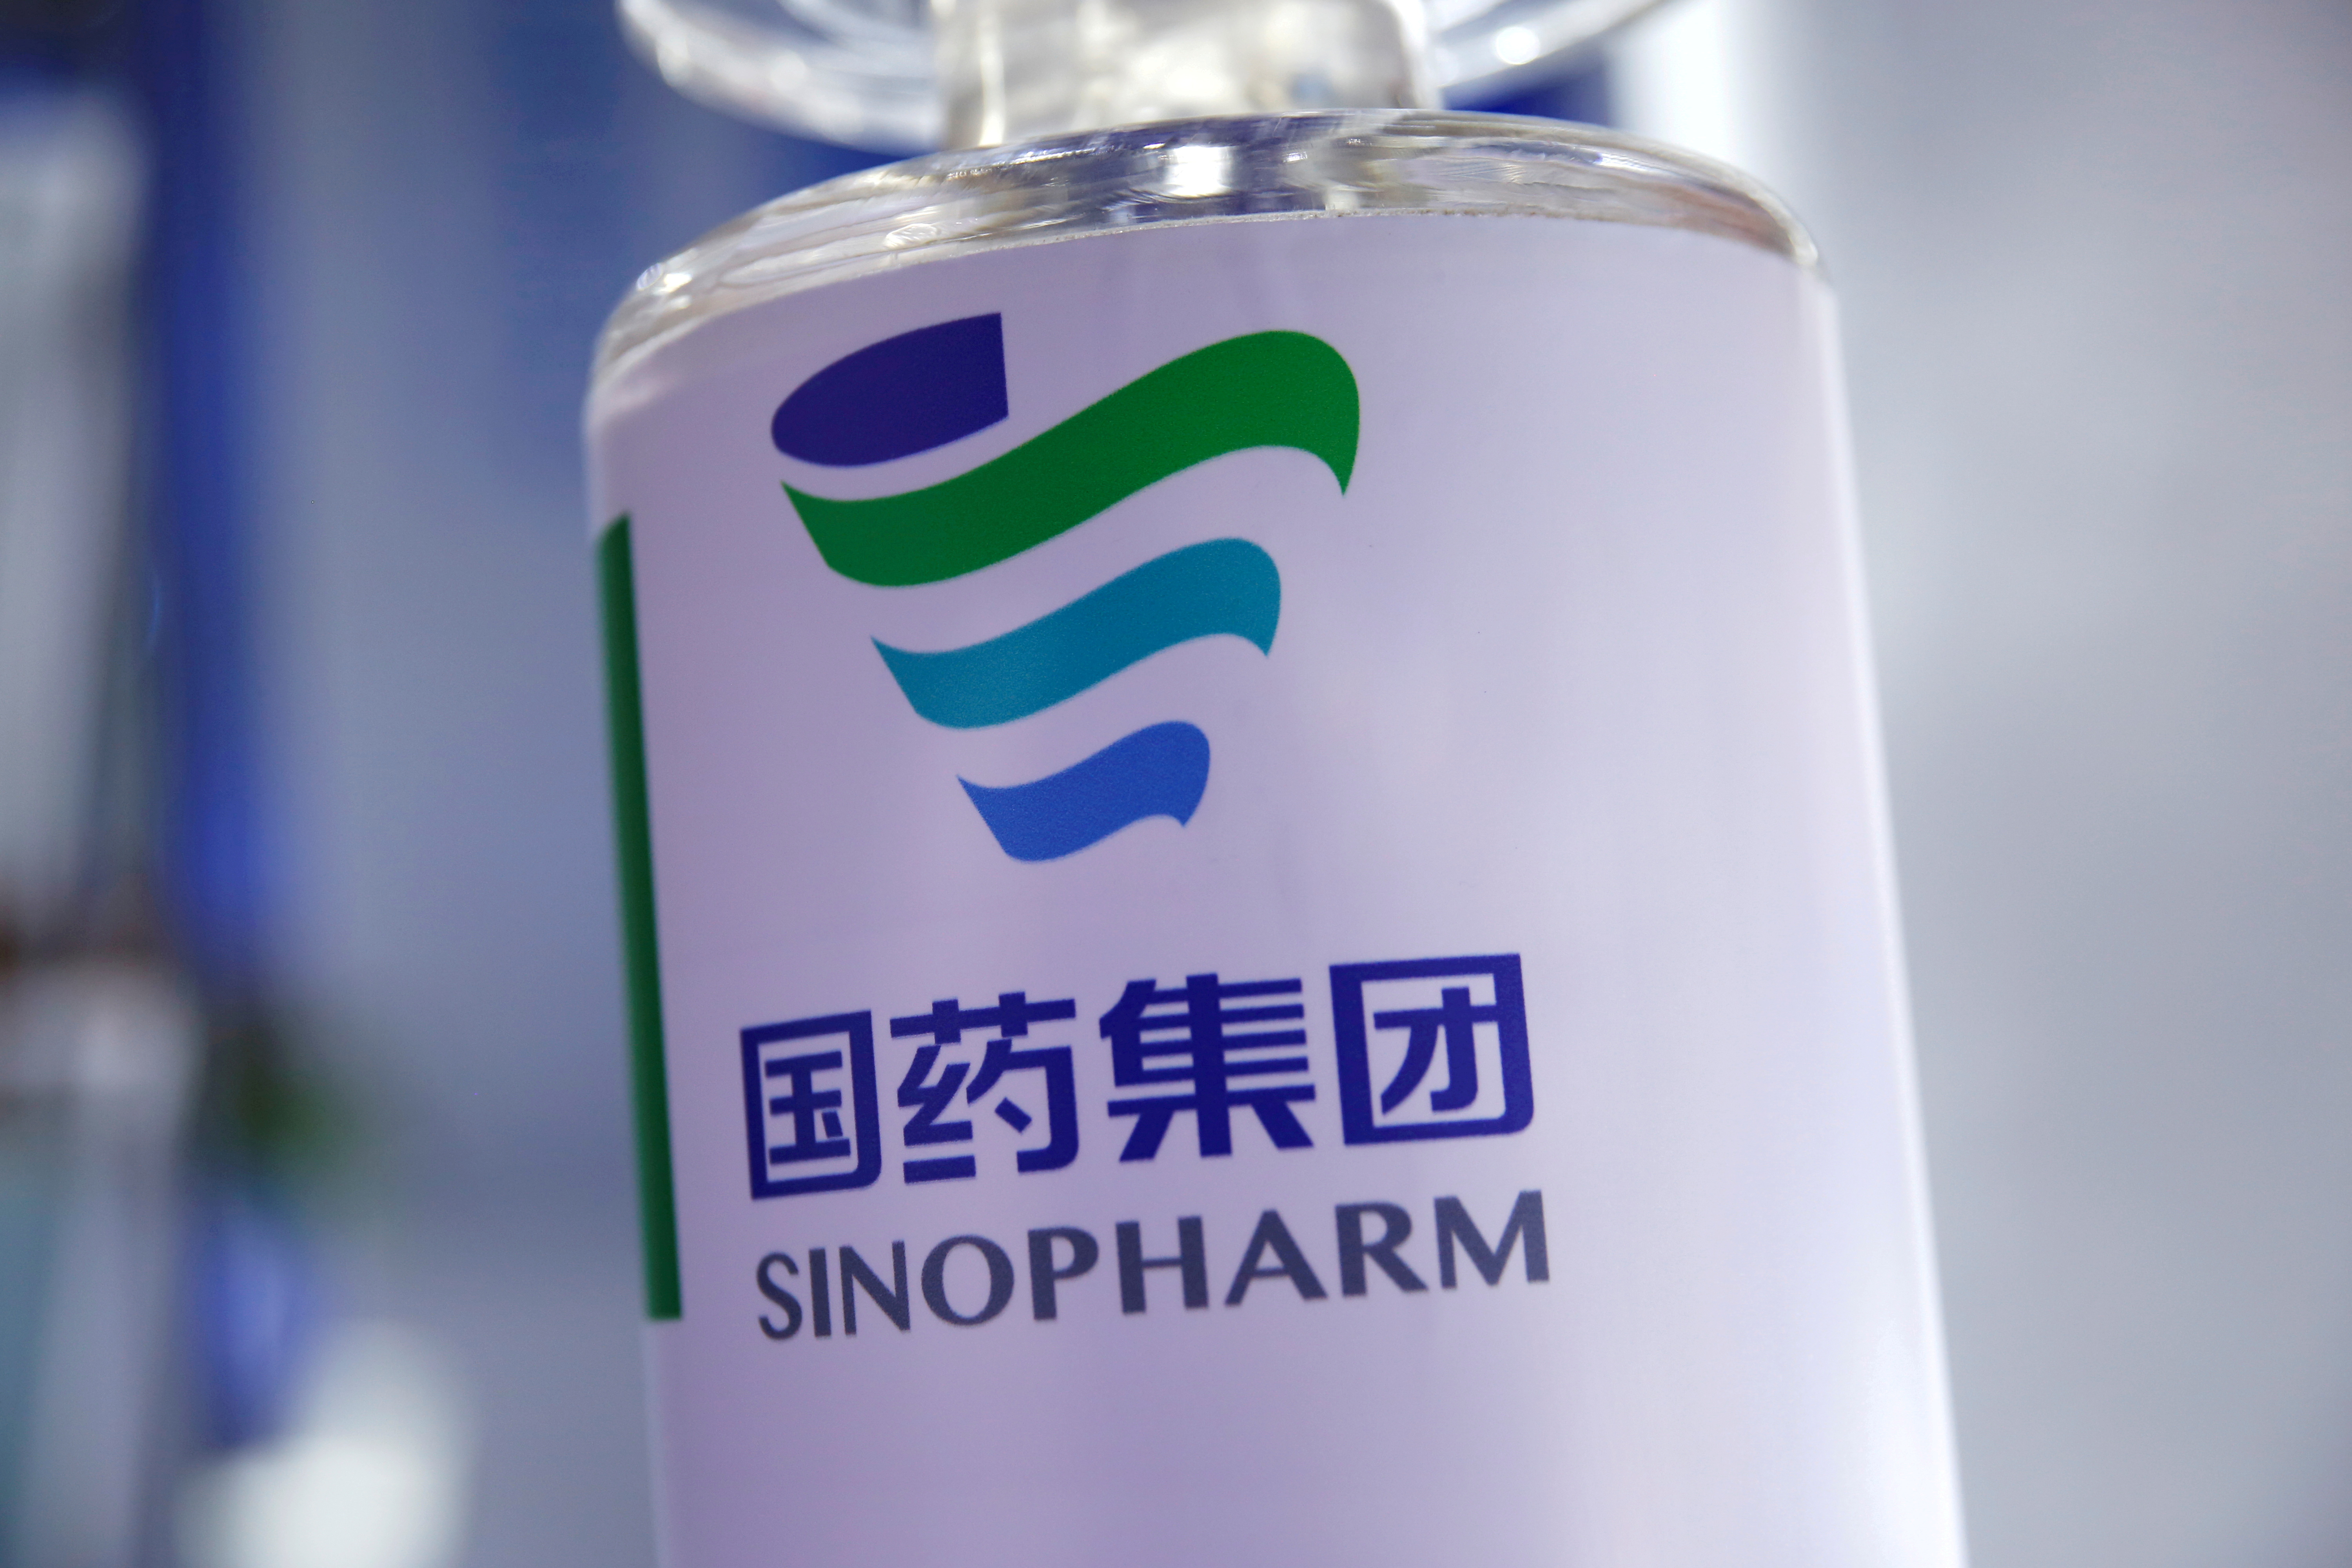 Las autoridades nacionales esperan la aprobación de la ANMAT para poder usar las vacunas de Sinopharm en menores de 18 años (REUTERS/Tingshu Wang)